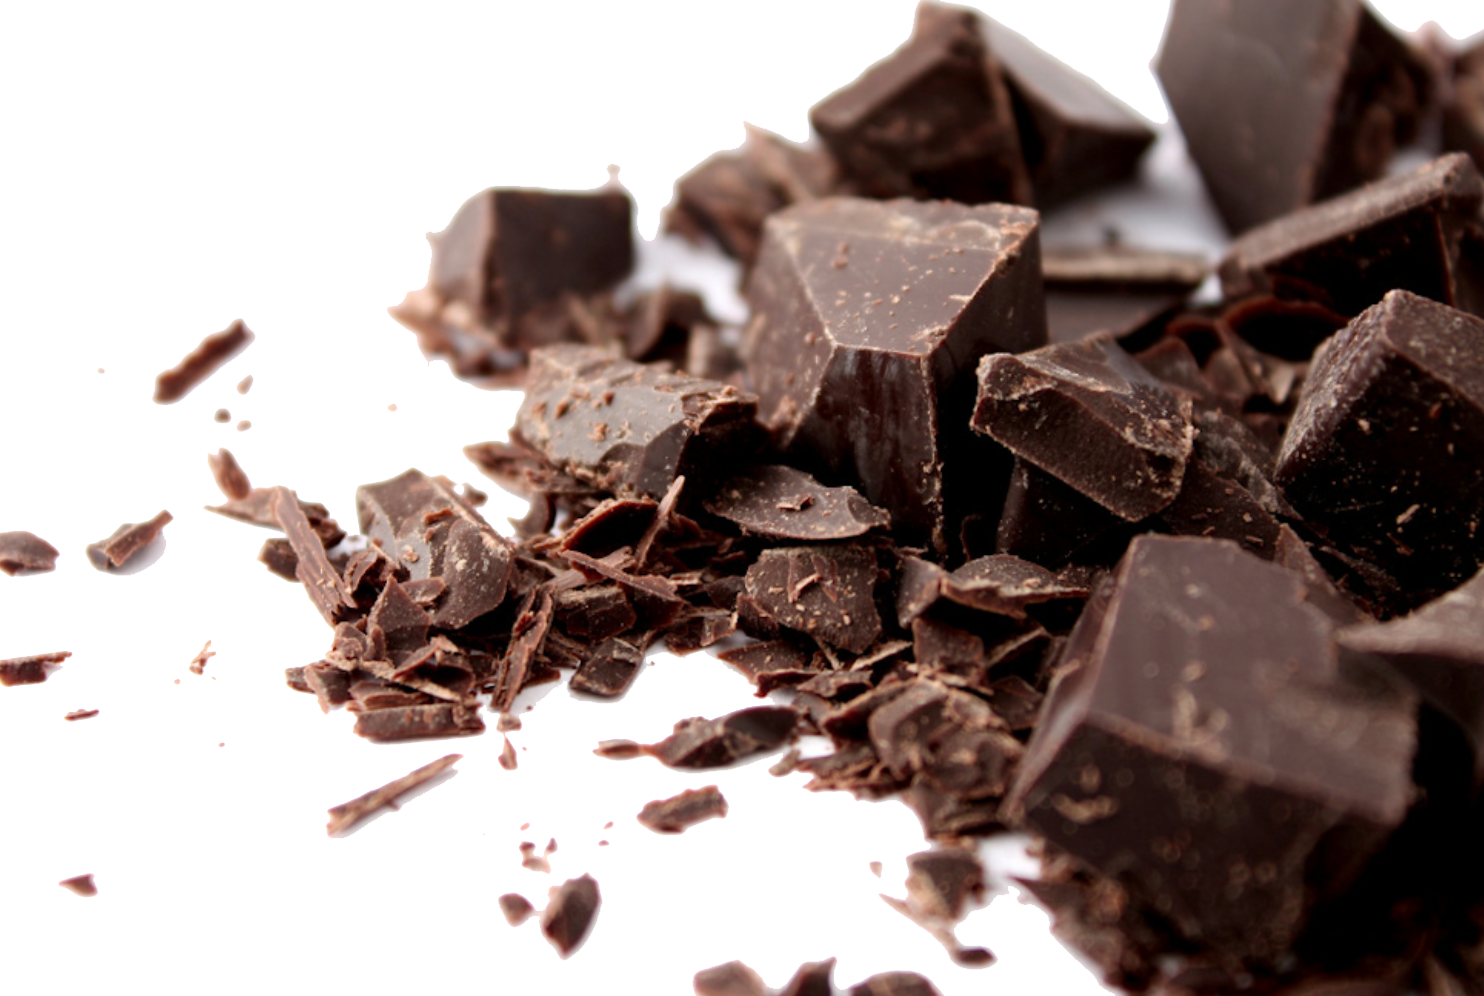 Imagen Transparente PNG de chocolate